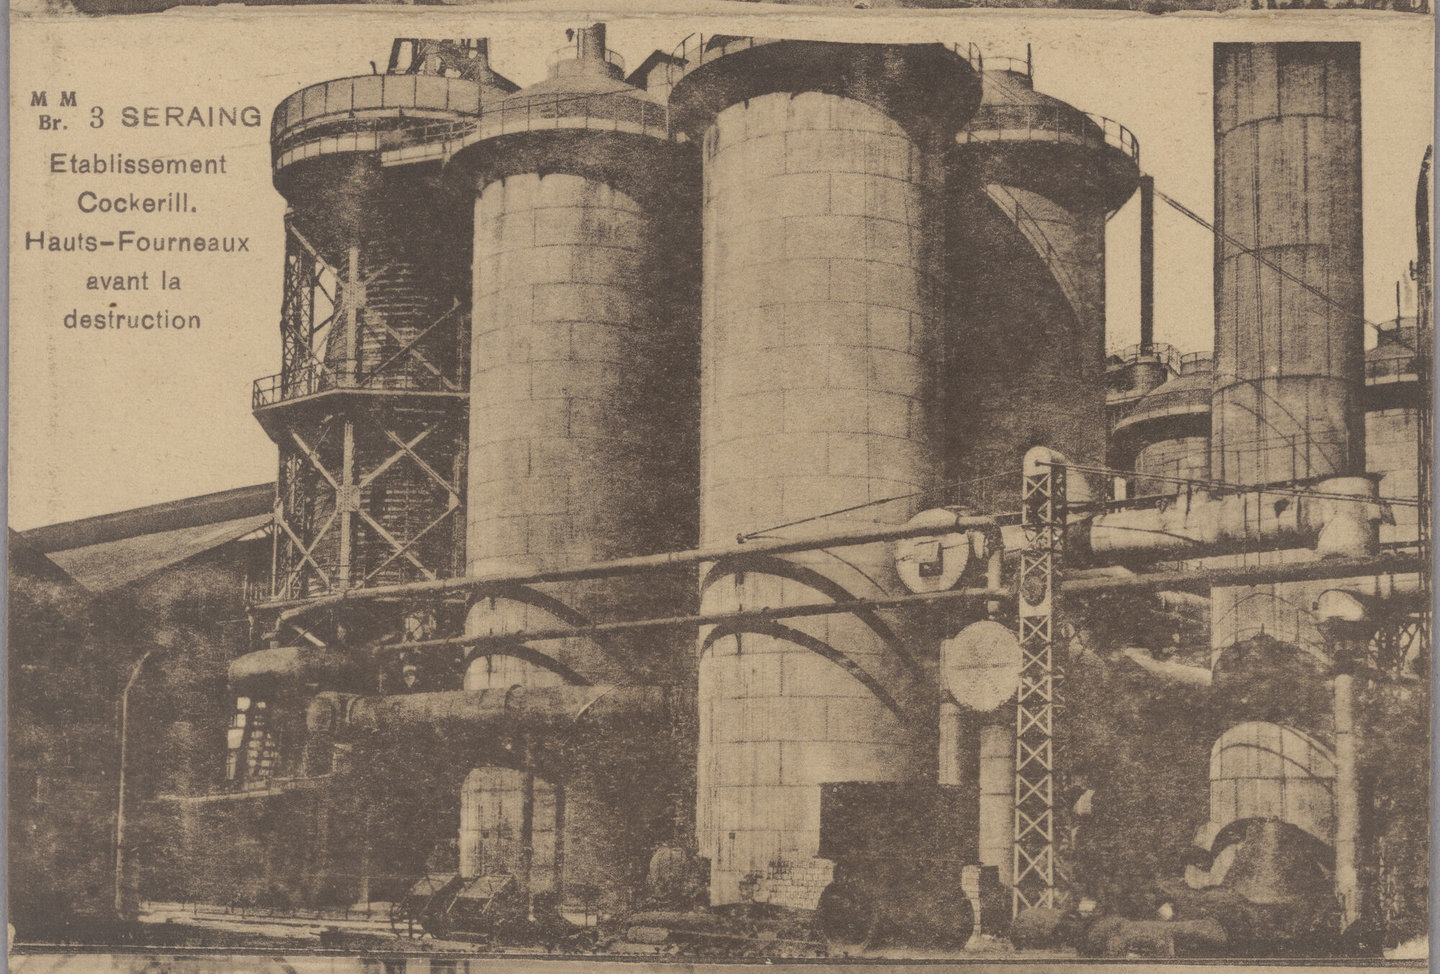 Zicht op de hoogovens van staalfabriek Cockerill in Seraing vóór de vernietiging in de Eerste Wereldoorlog